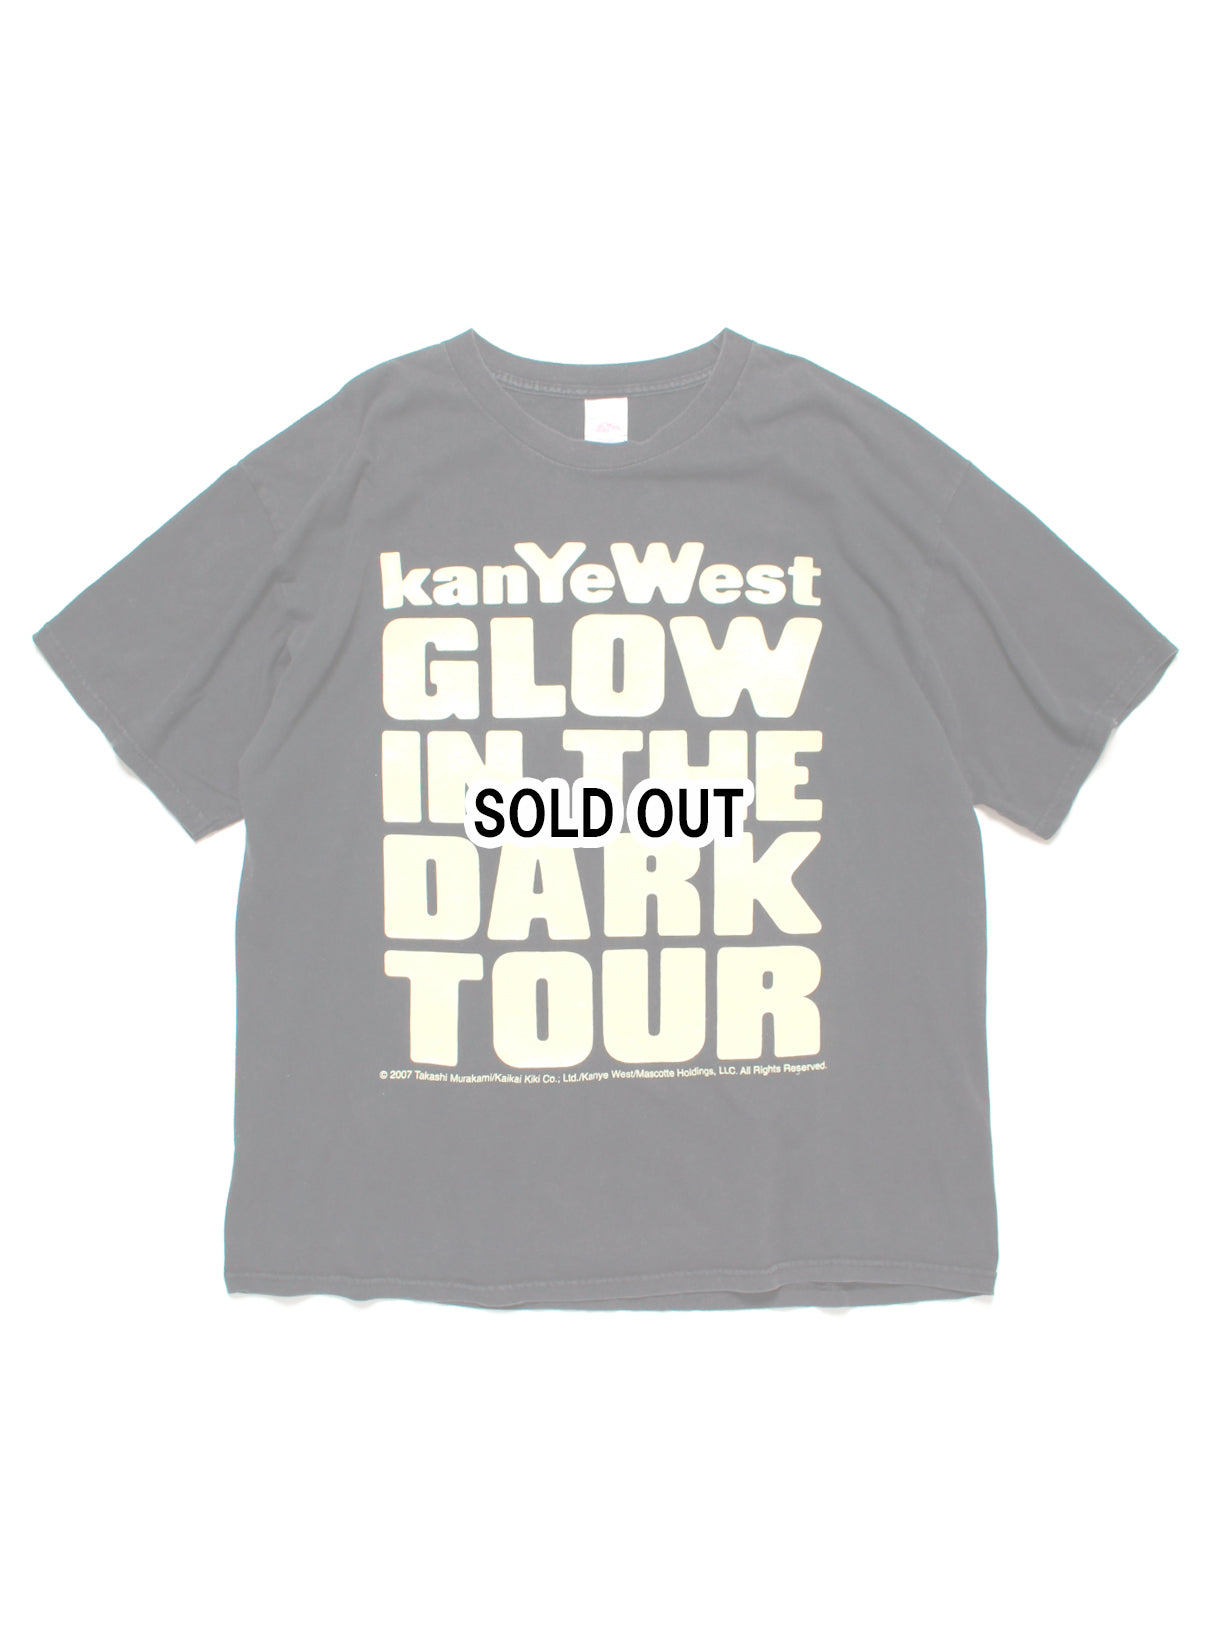 激レア! 2008年 KANYE WEST 『GLOW IN THE DARK』 ツアー Tシャツ 村上 